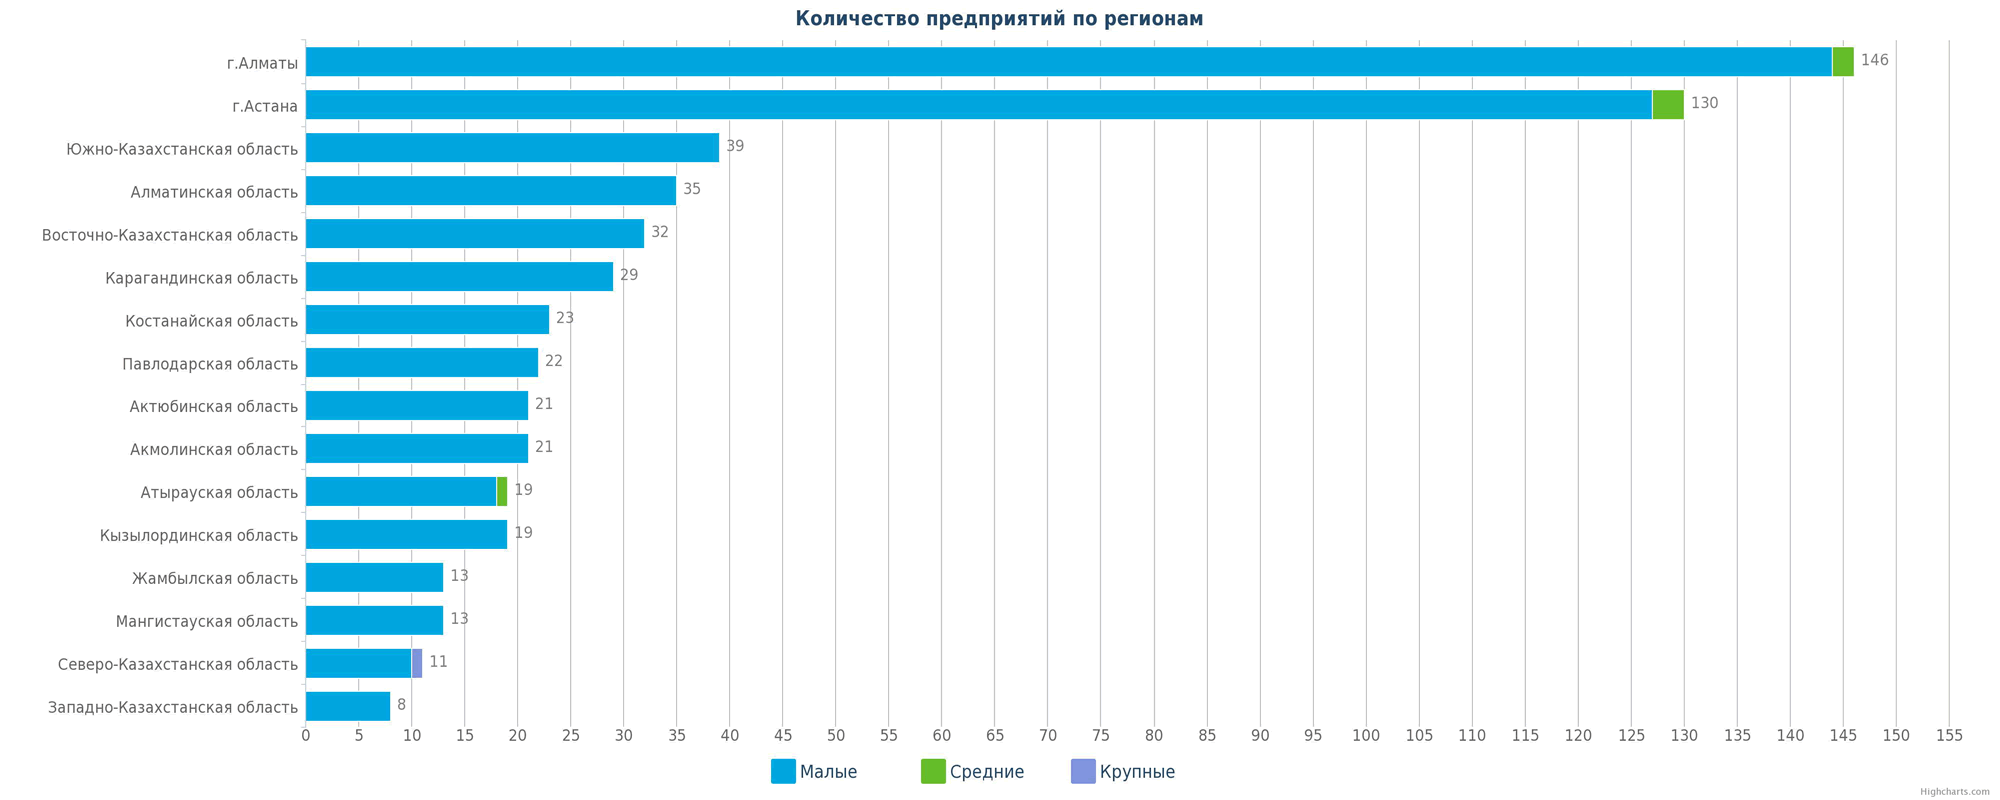 Количество новых организаций в справочнике по регионам Казахстана - гистограмма